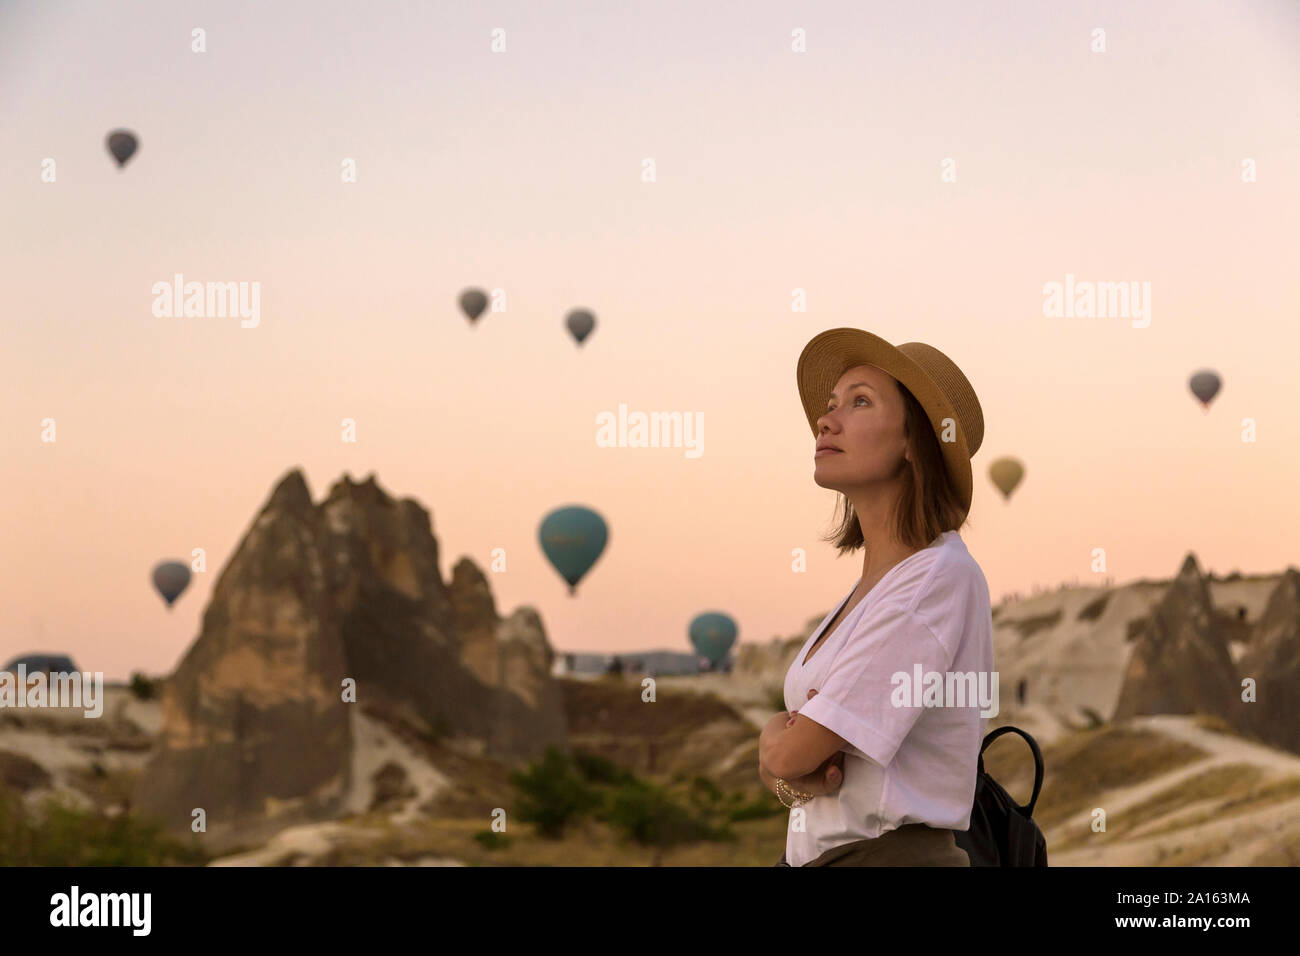 Giovane donna e aria calda ballons, Goreme, Cappadocia, Turchia Foto Stock